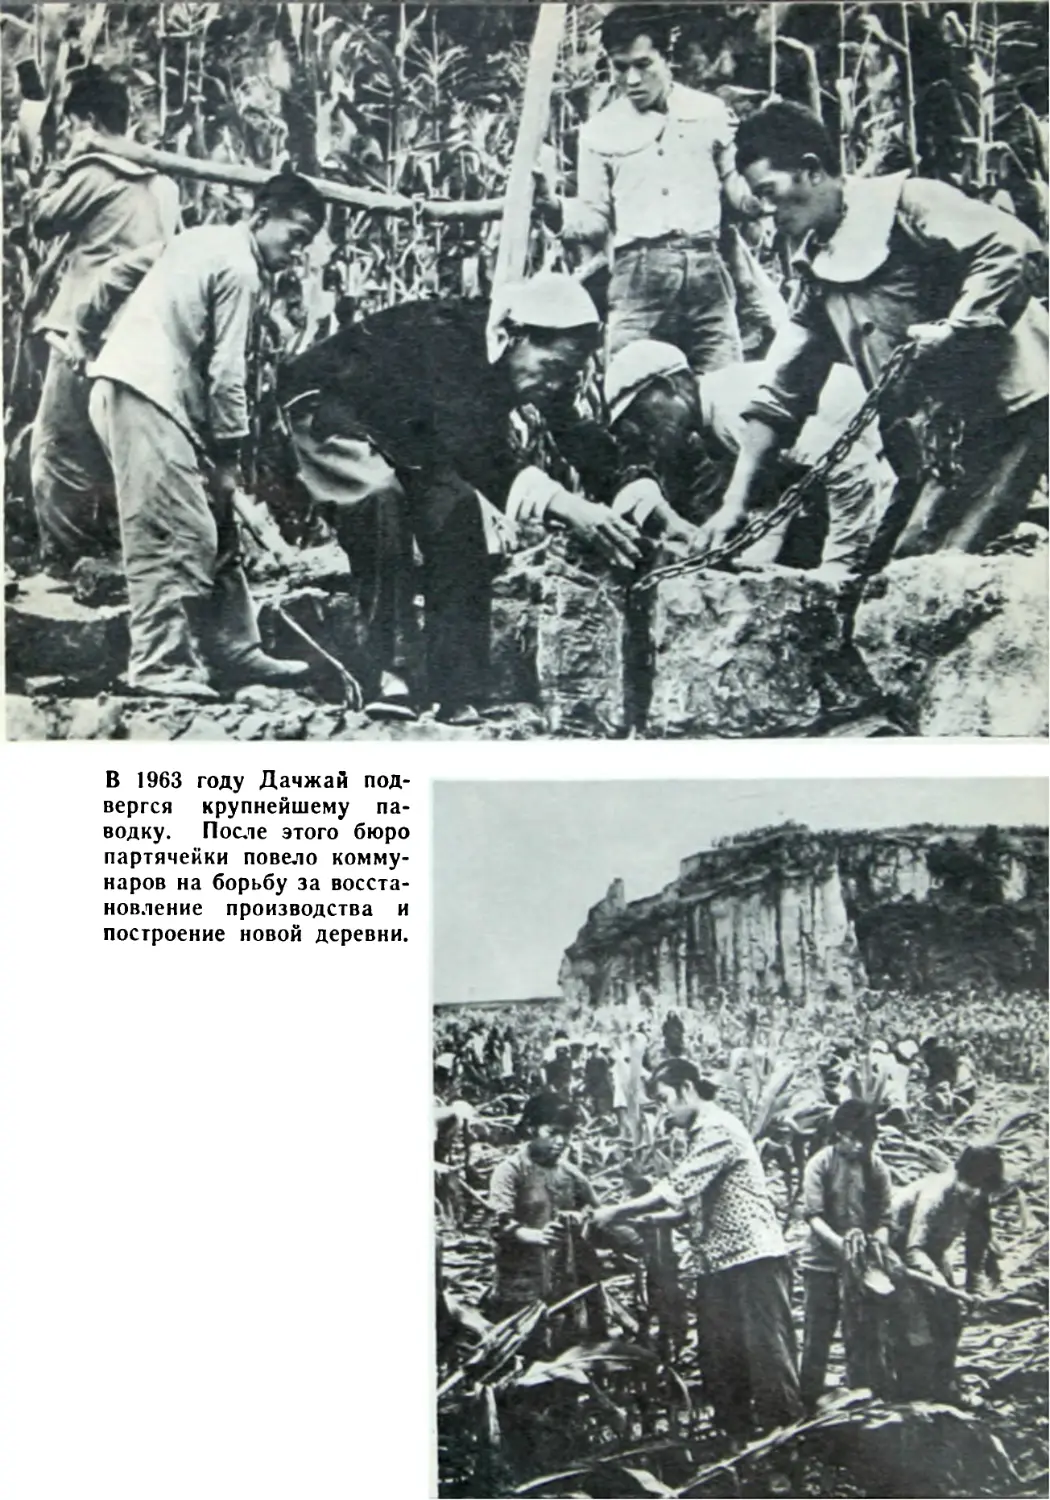 В 1963 году Дачжай подвергся крупнейшему паводку. После этого бюро партячейки повело коммунаров на борьбу за восстановление производства и построение новой деревни